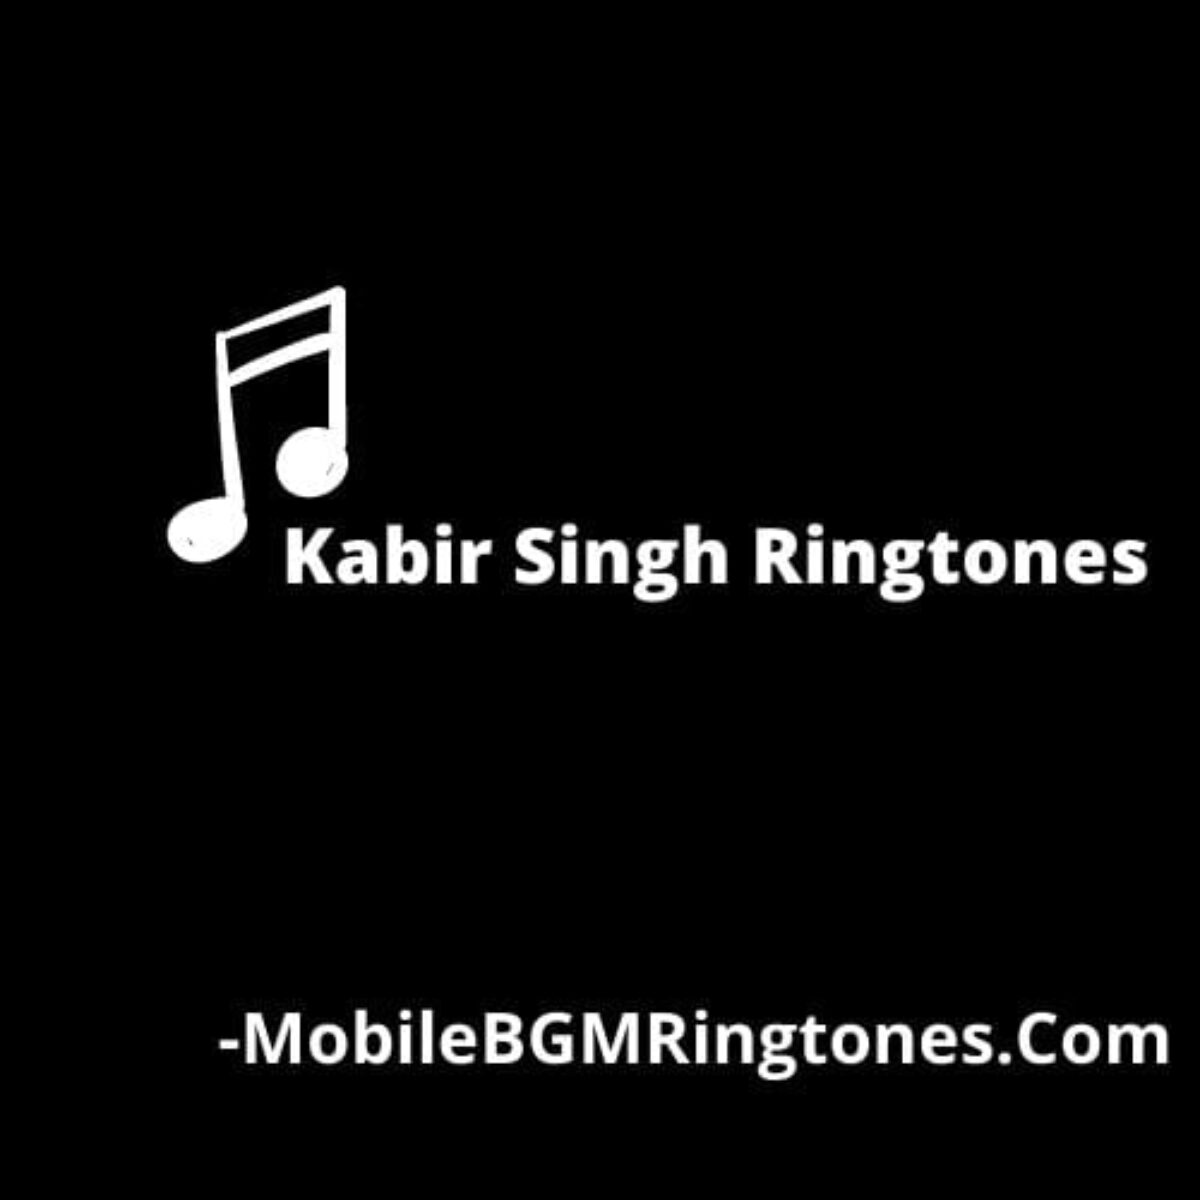 Kabir Singh Ringtones and BGM Mp3 Download (Hindi)